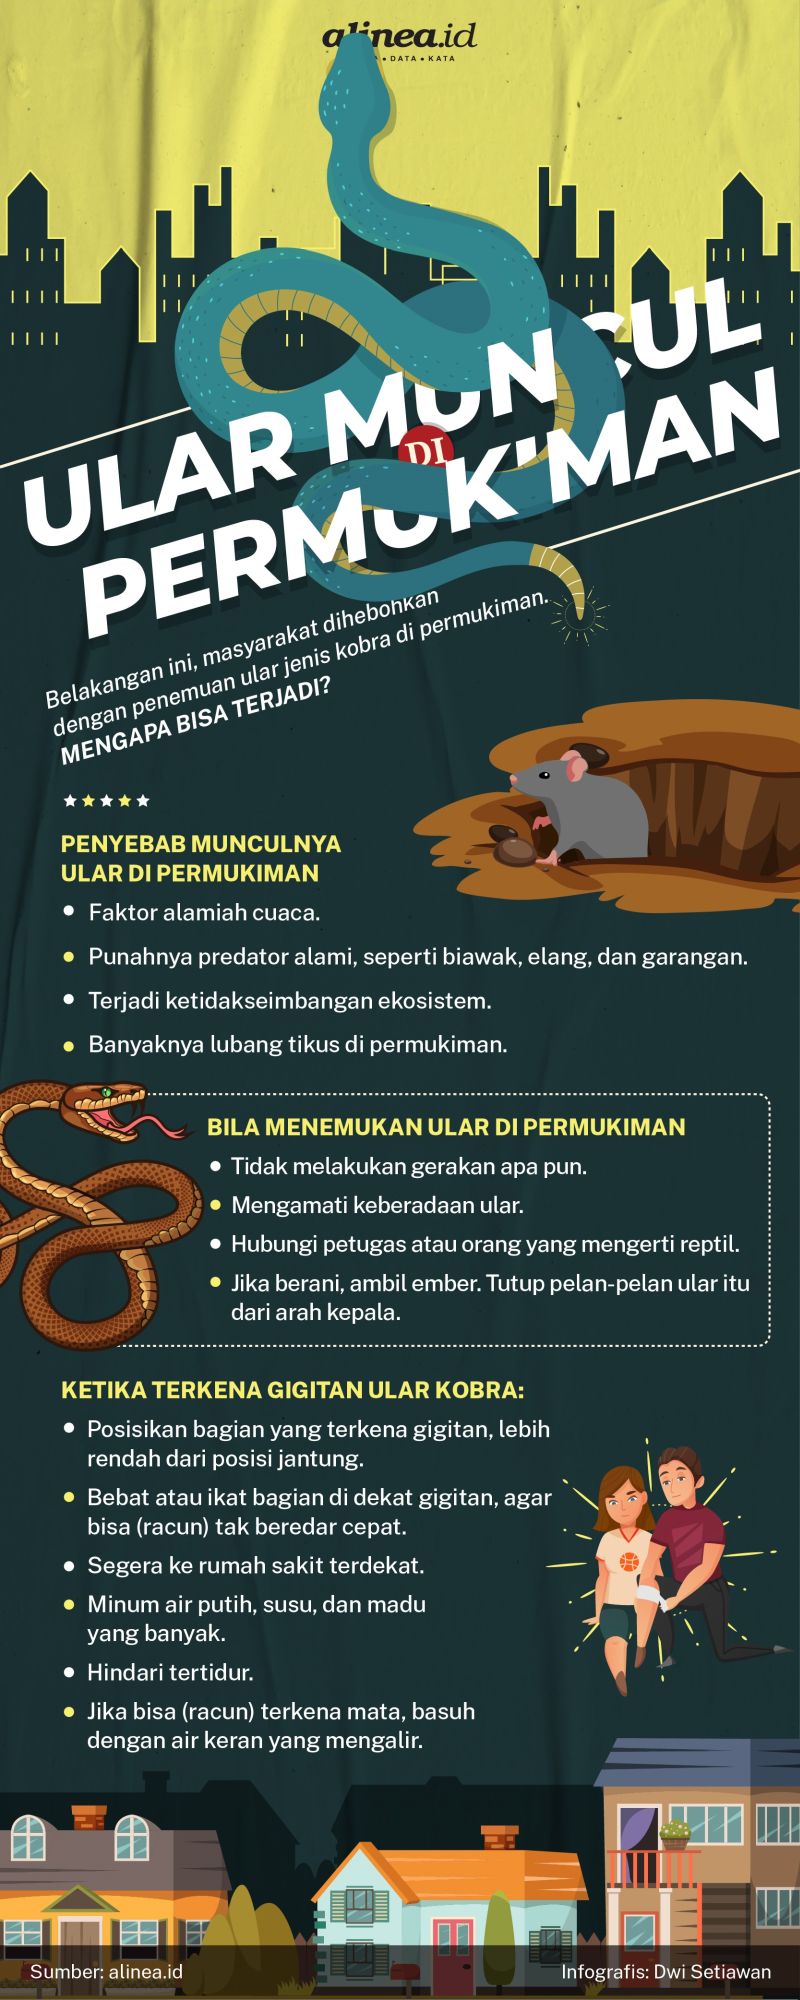 Infografik ular di permukiman. Alinea.id/Dwi Setiawan.